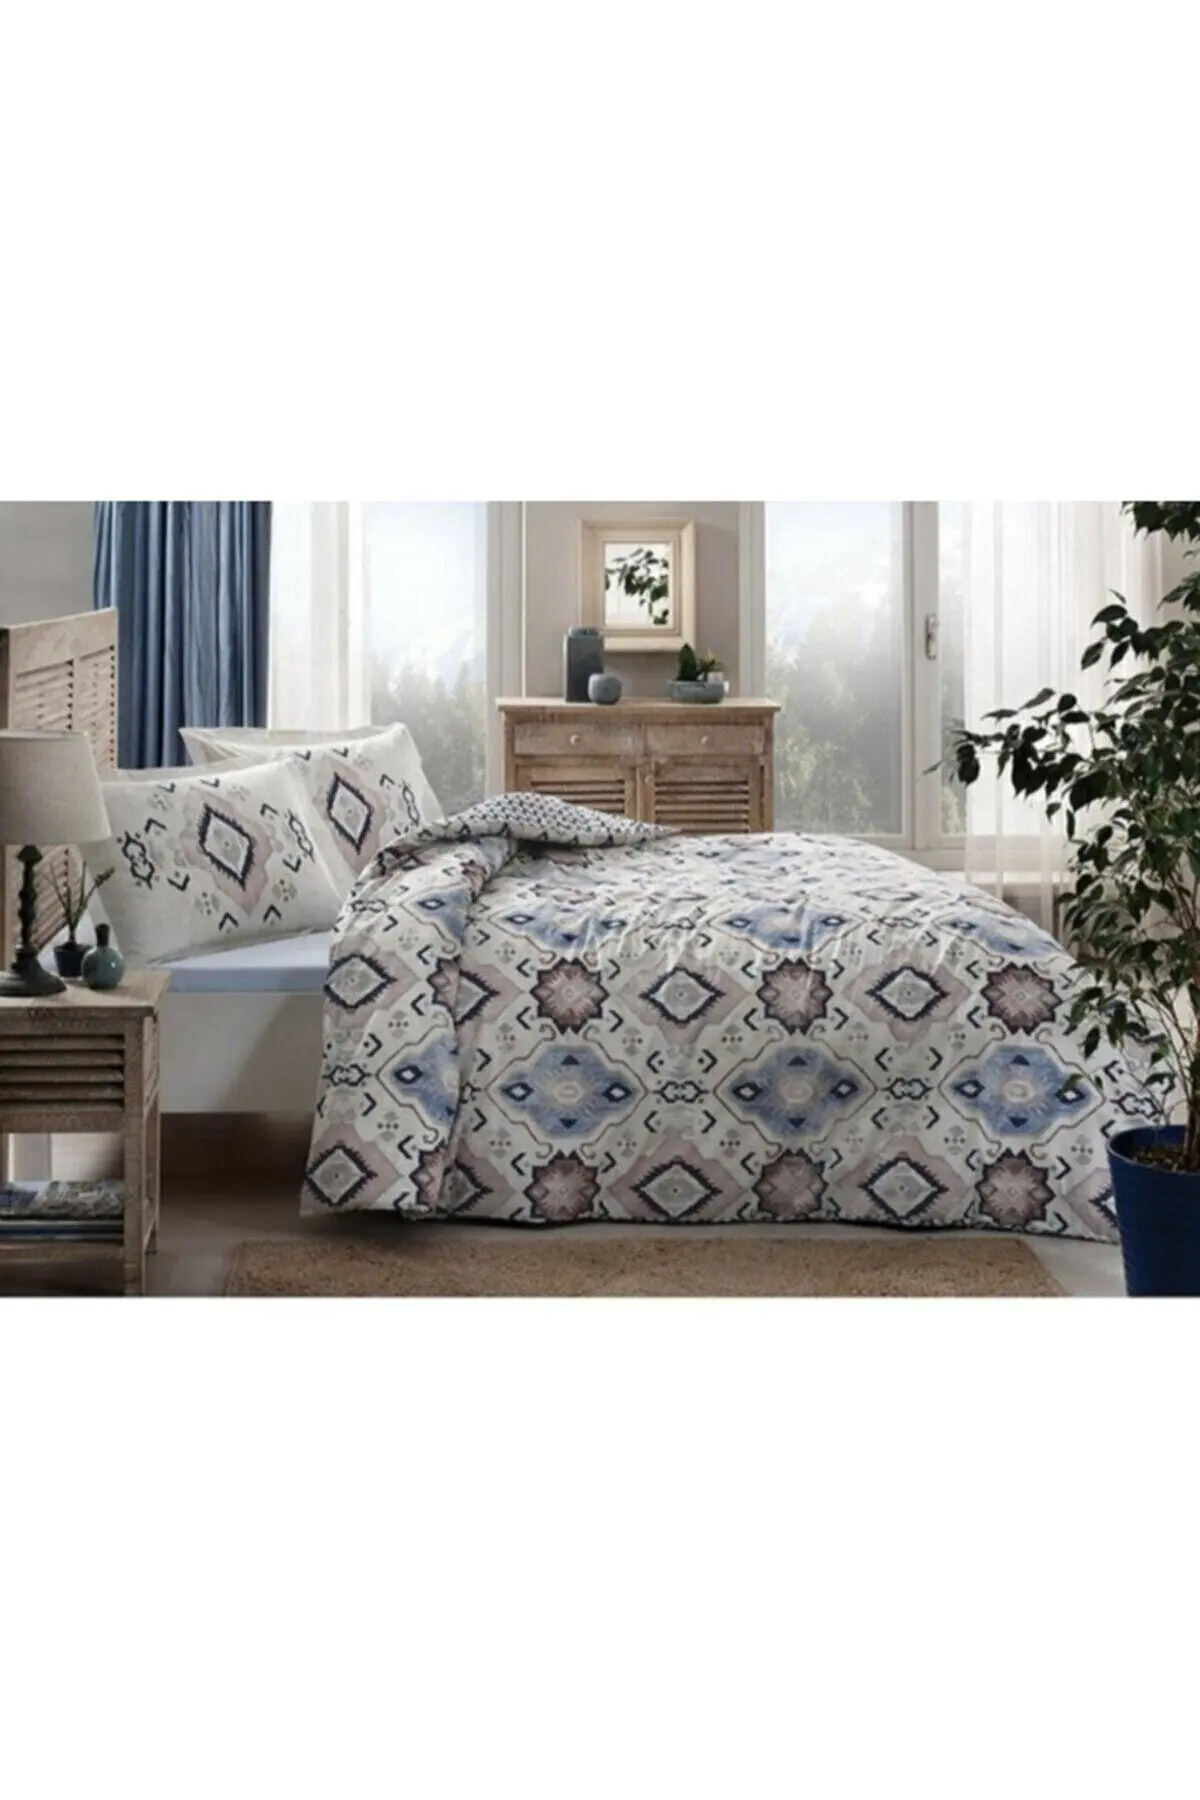 

Özdilek Azure Double Duvet Cover Set Blue, Without Rubber, 200x220 Cm, Bed Sheet 240x260 cm, Pillowcase 50x70 cm (2 Pieces)